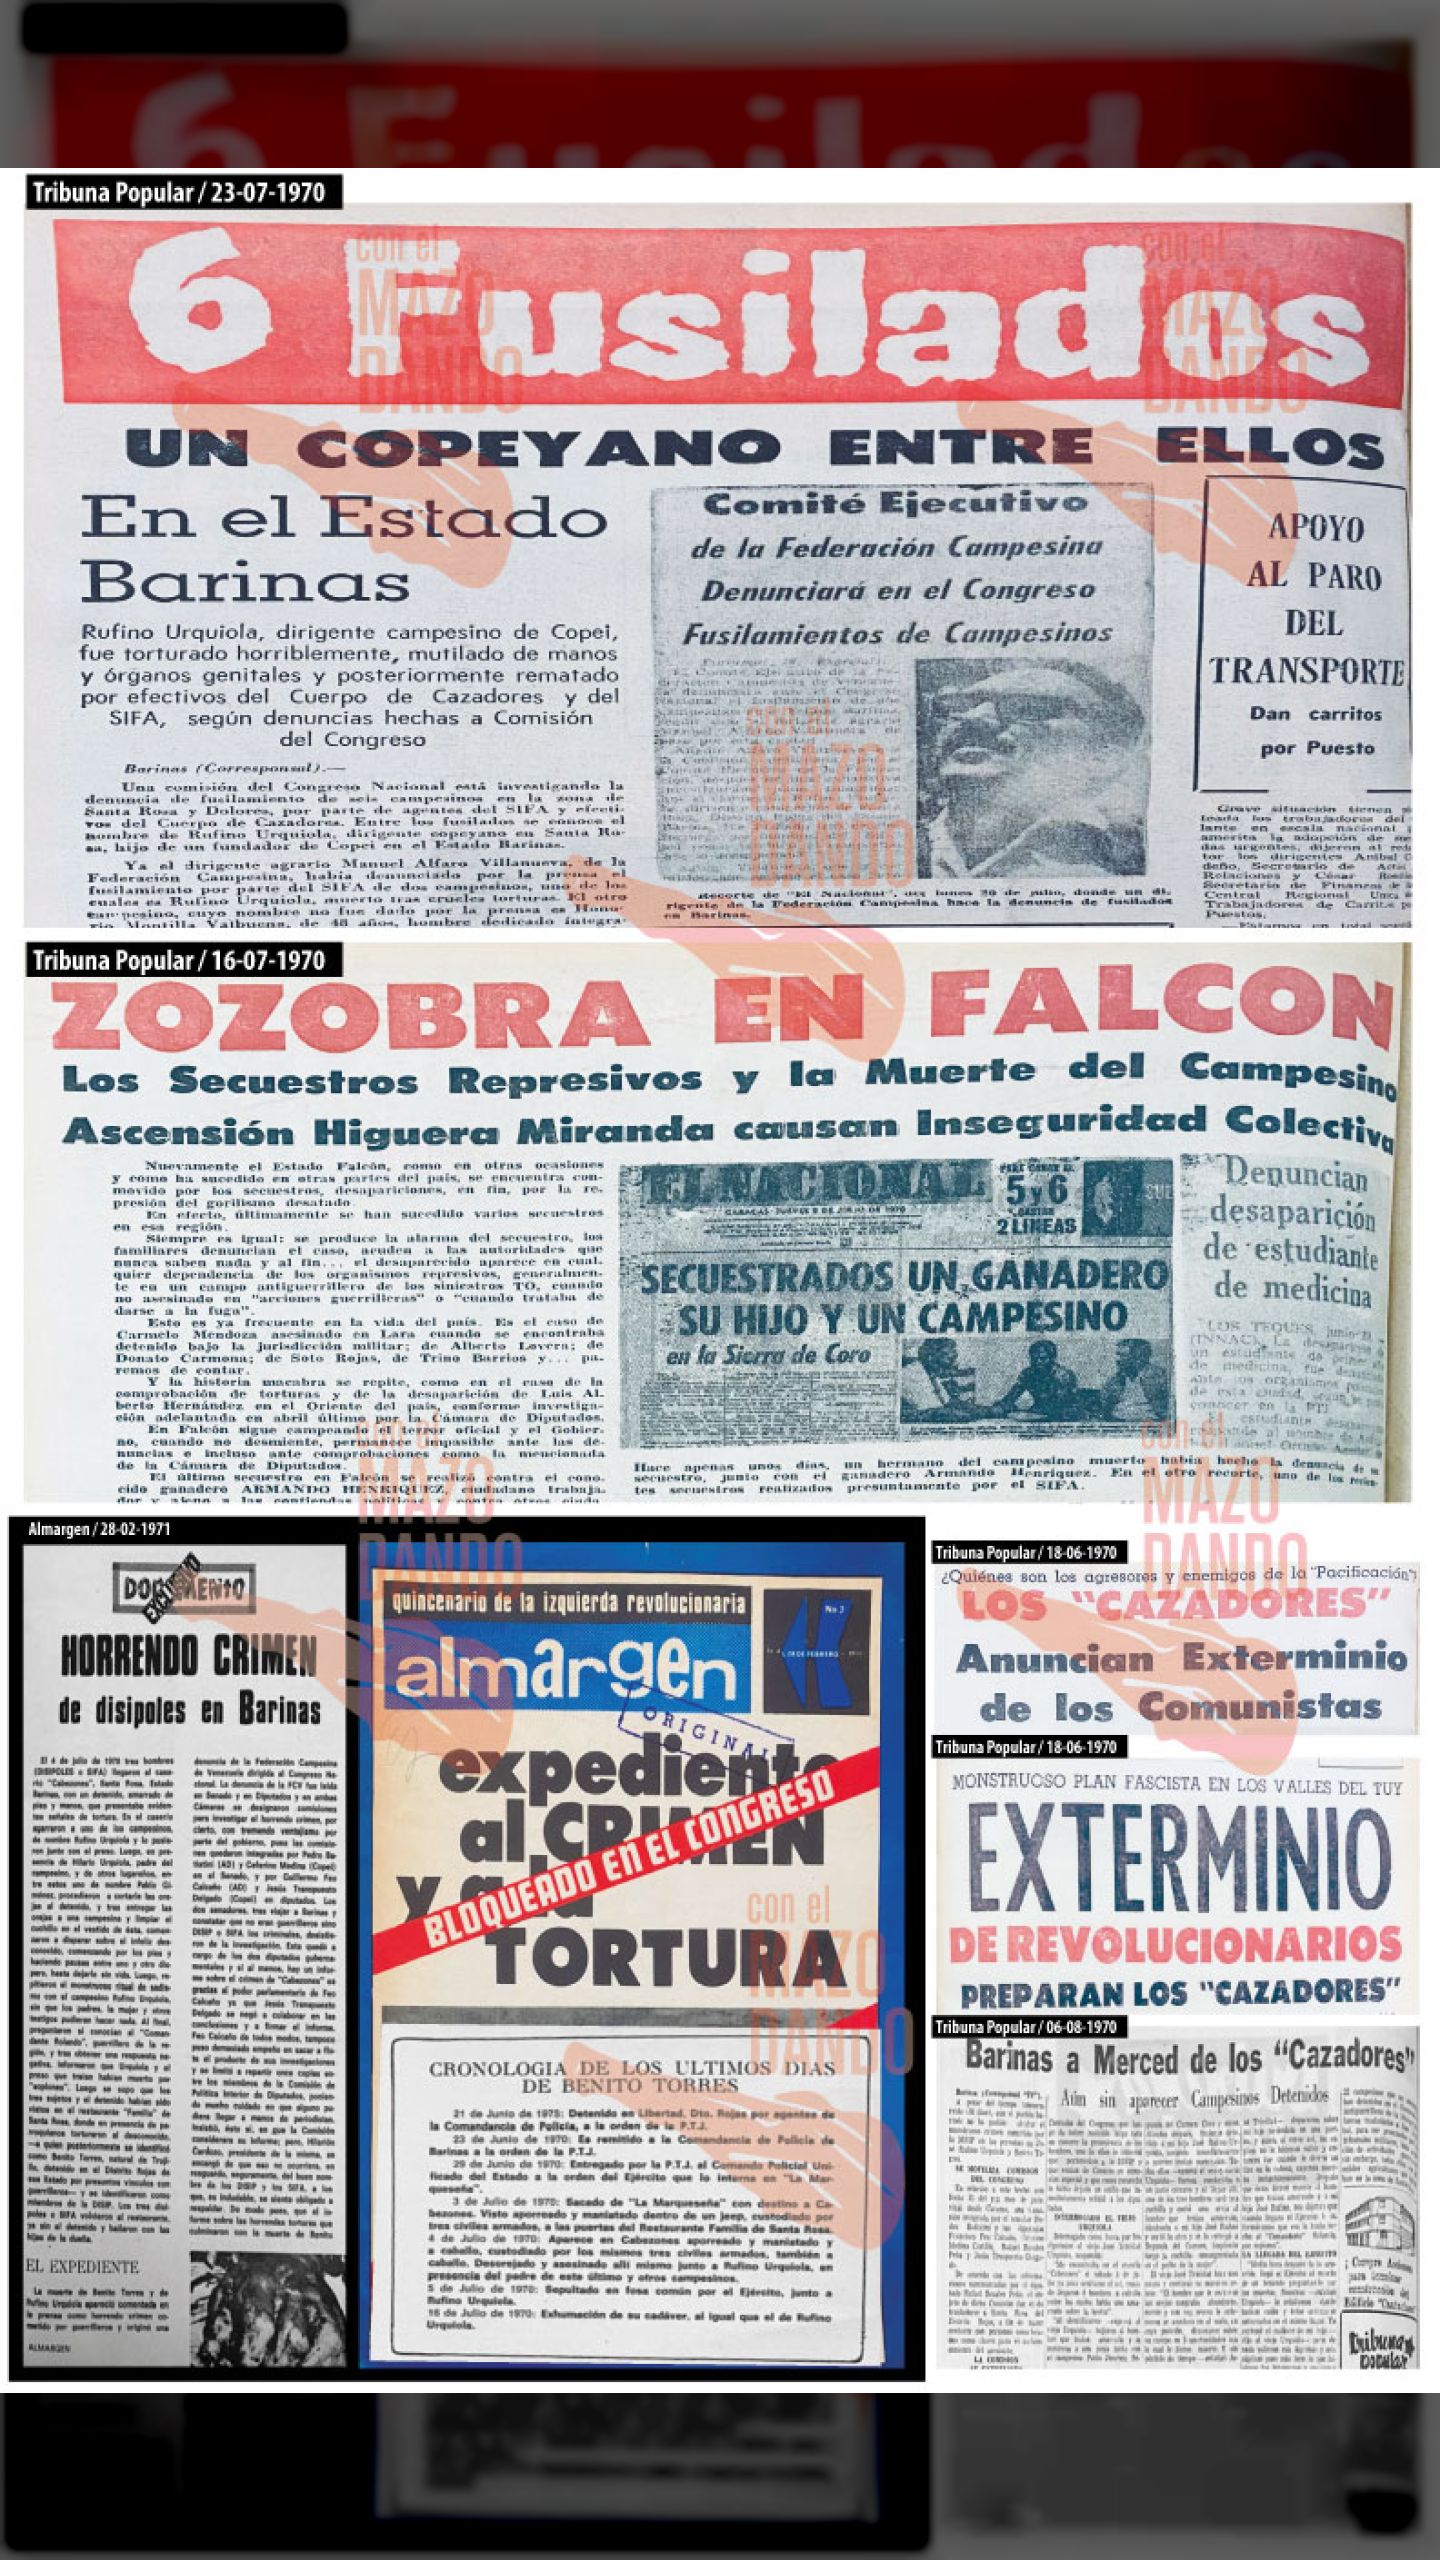 Seis campesinos fusilados en el edo. Barinas, uno en Portuguesa, y tres desaparecidos en el edo. Falcón